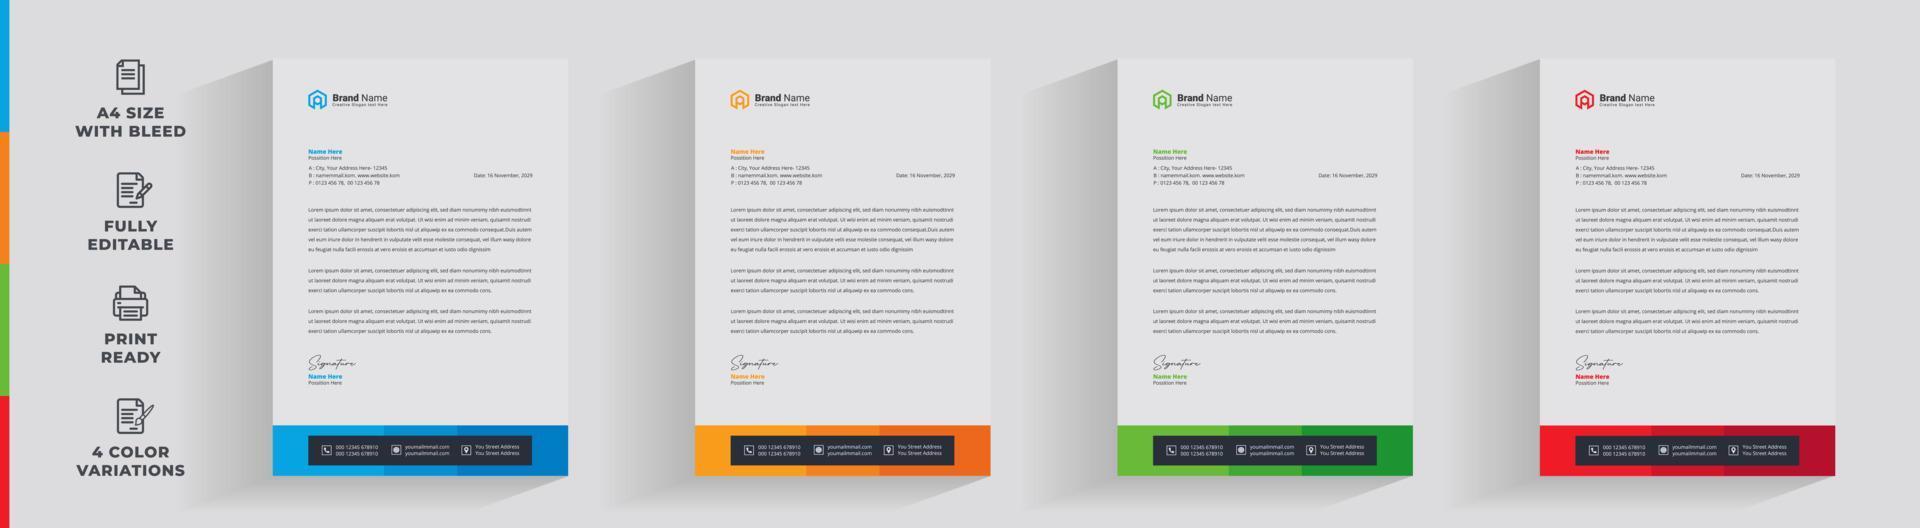 Letterhead corporate creative business company  minimal clean unique template design vector